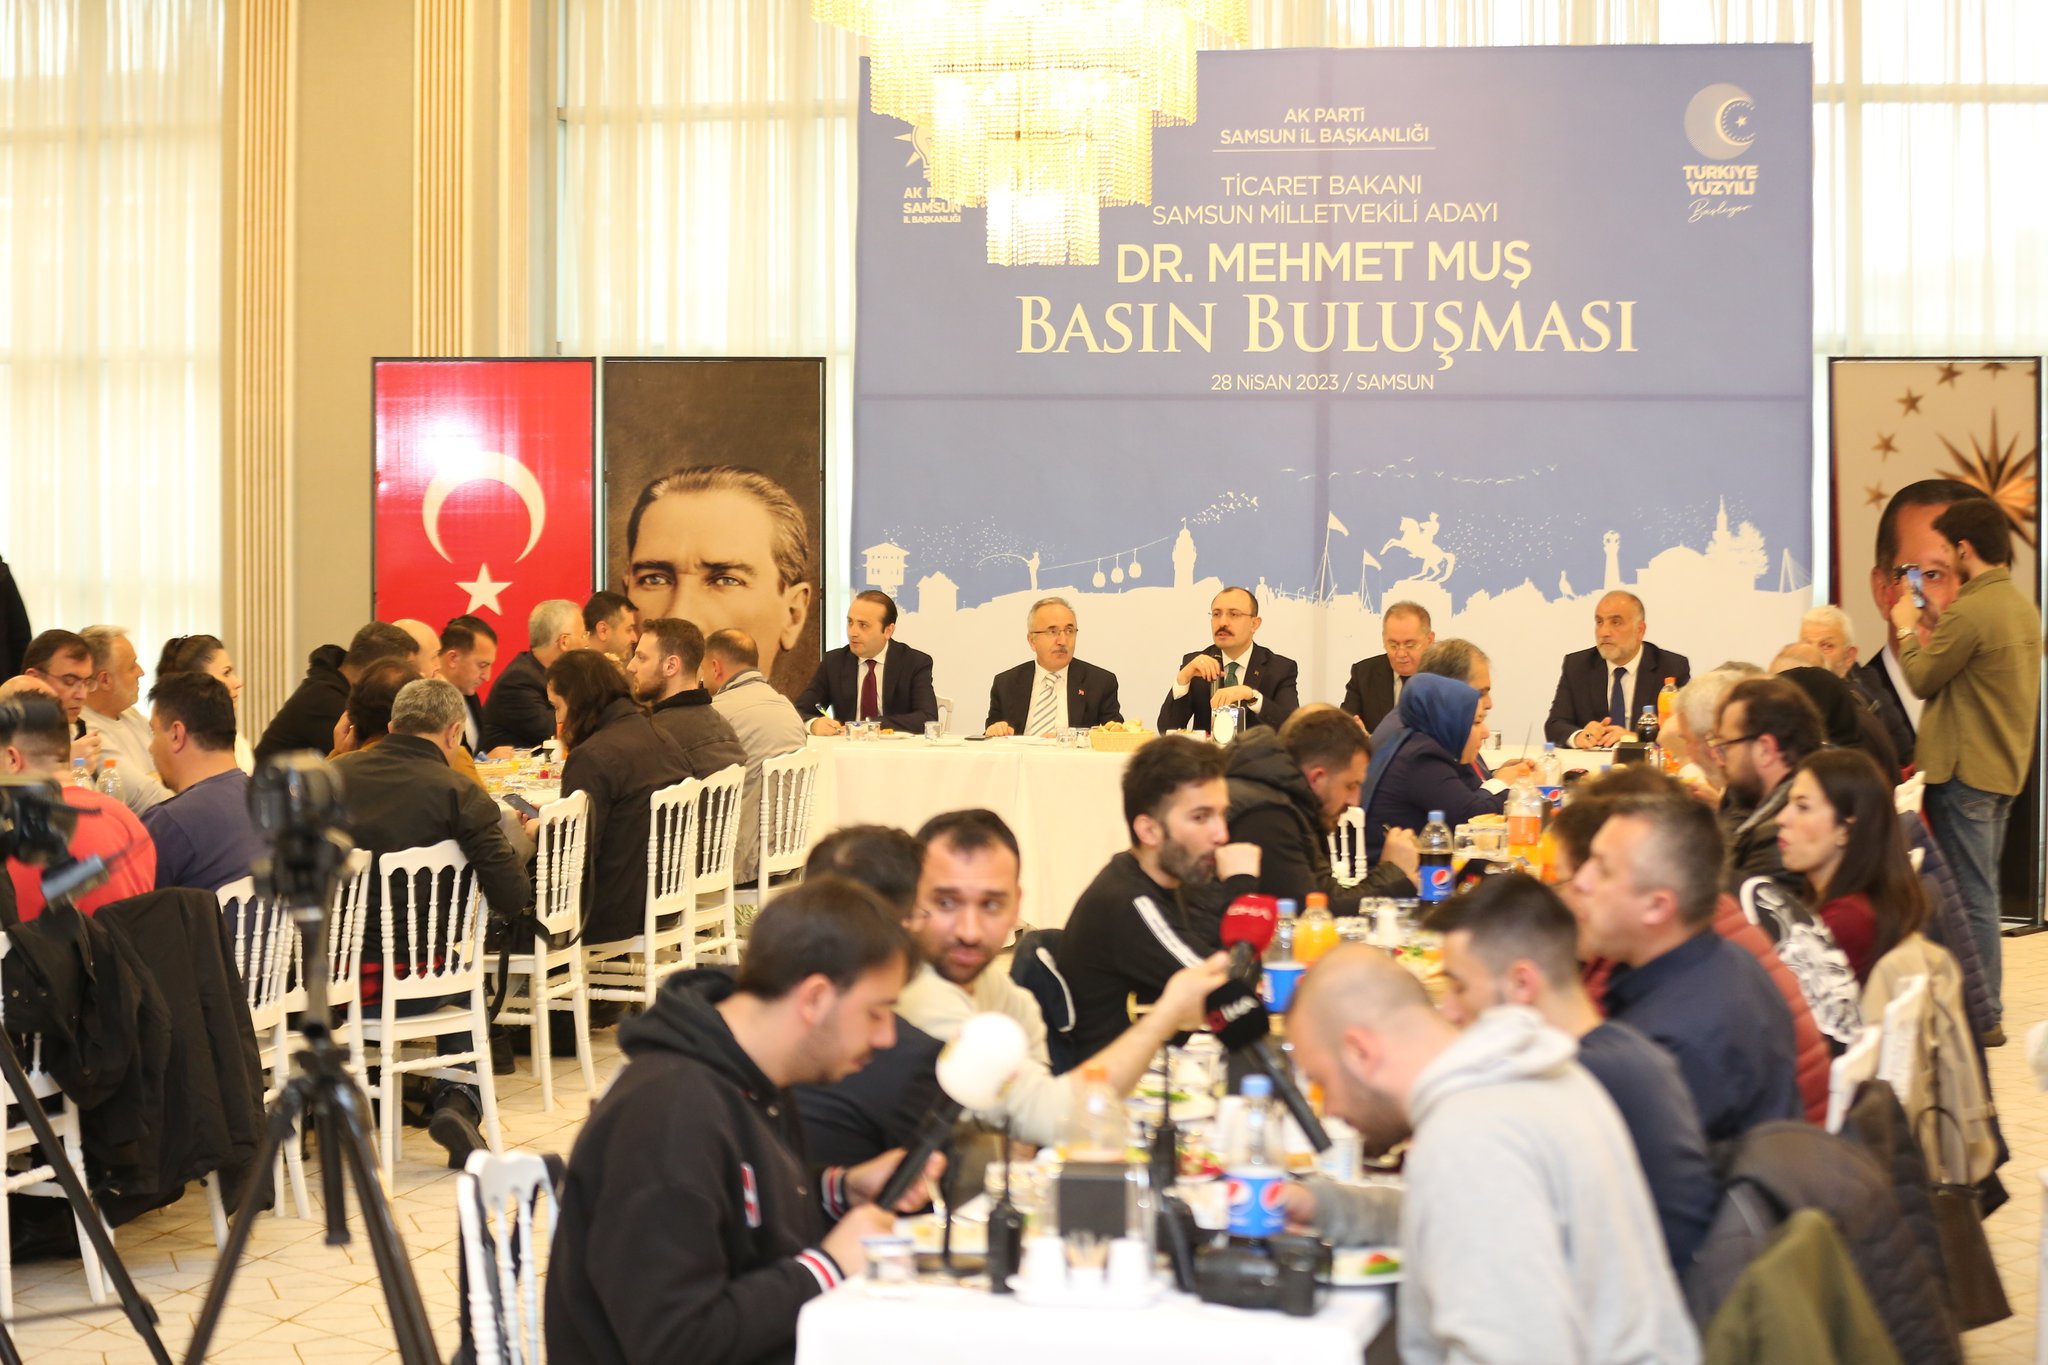 Ticaret Bakanı Muş, Samsun’da gazetecilerle bir araya geldi: